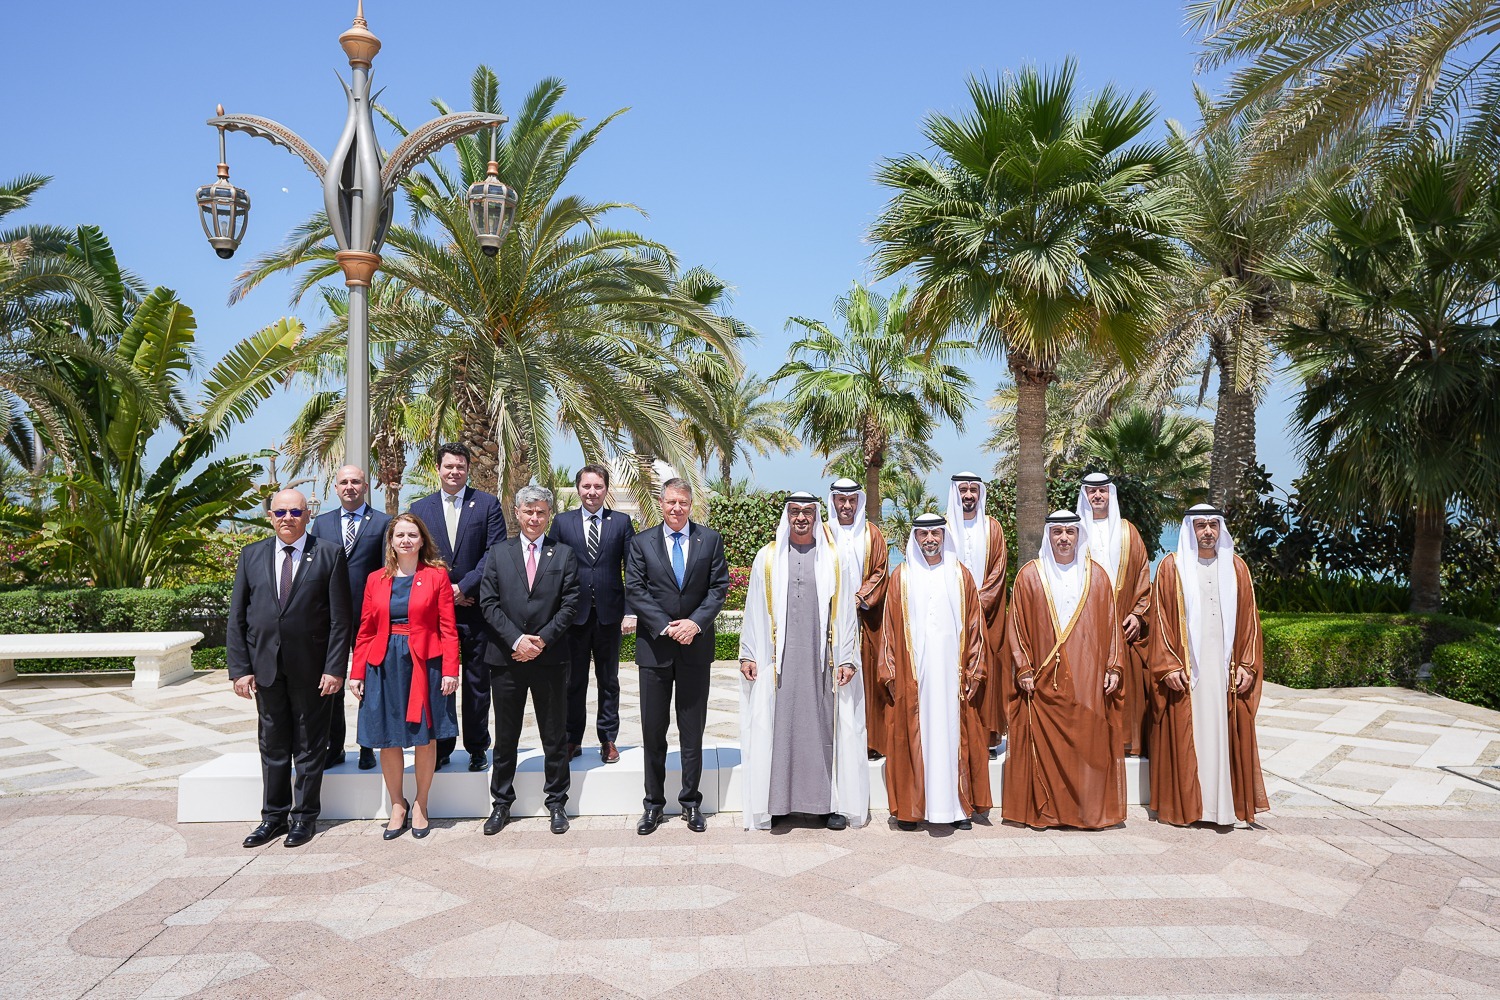 virgil popescu Emiratele arabe unite nuclearelectrica